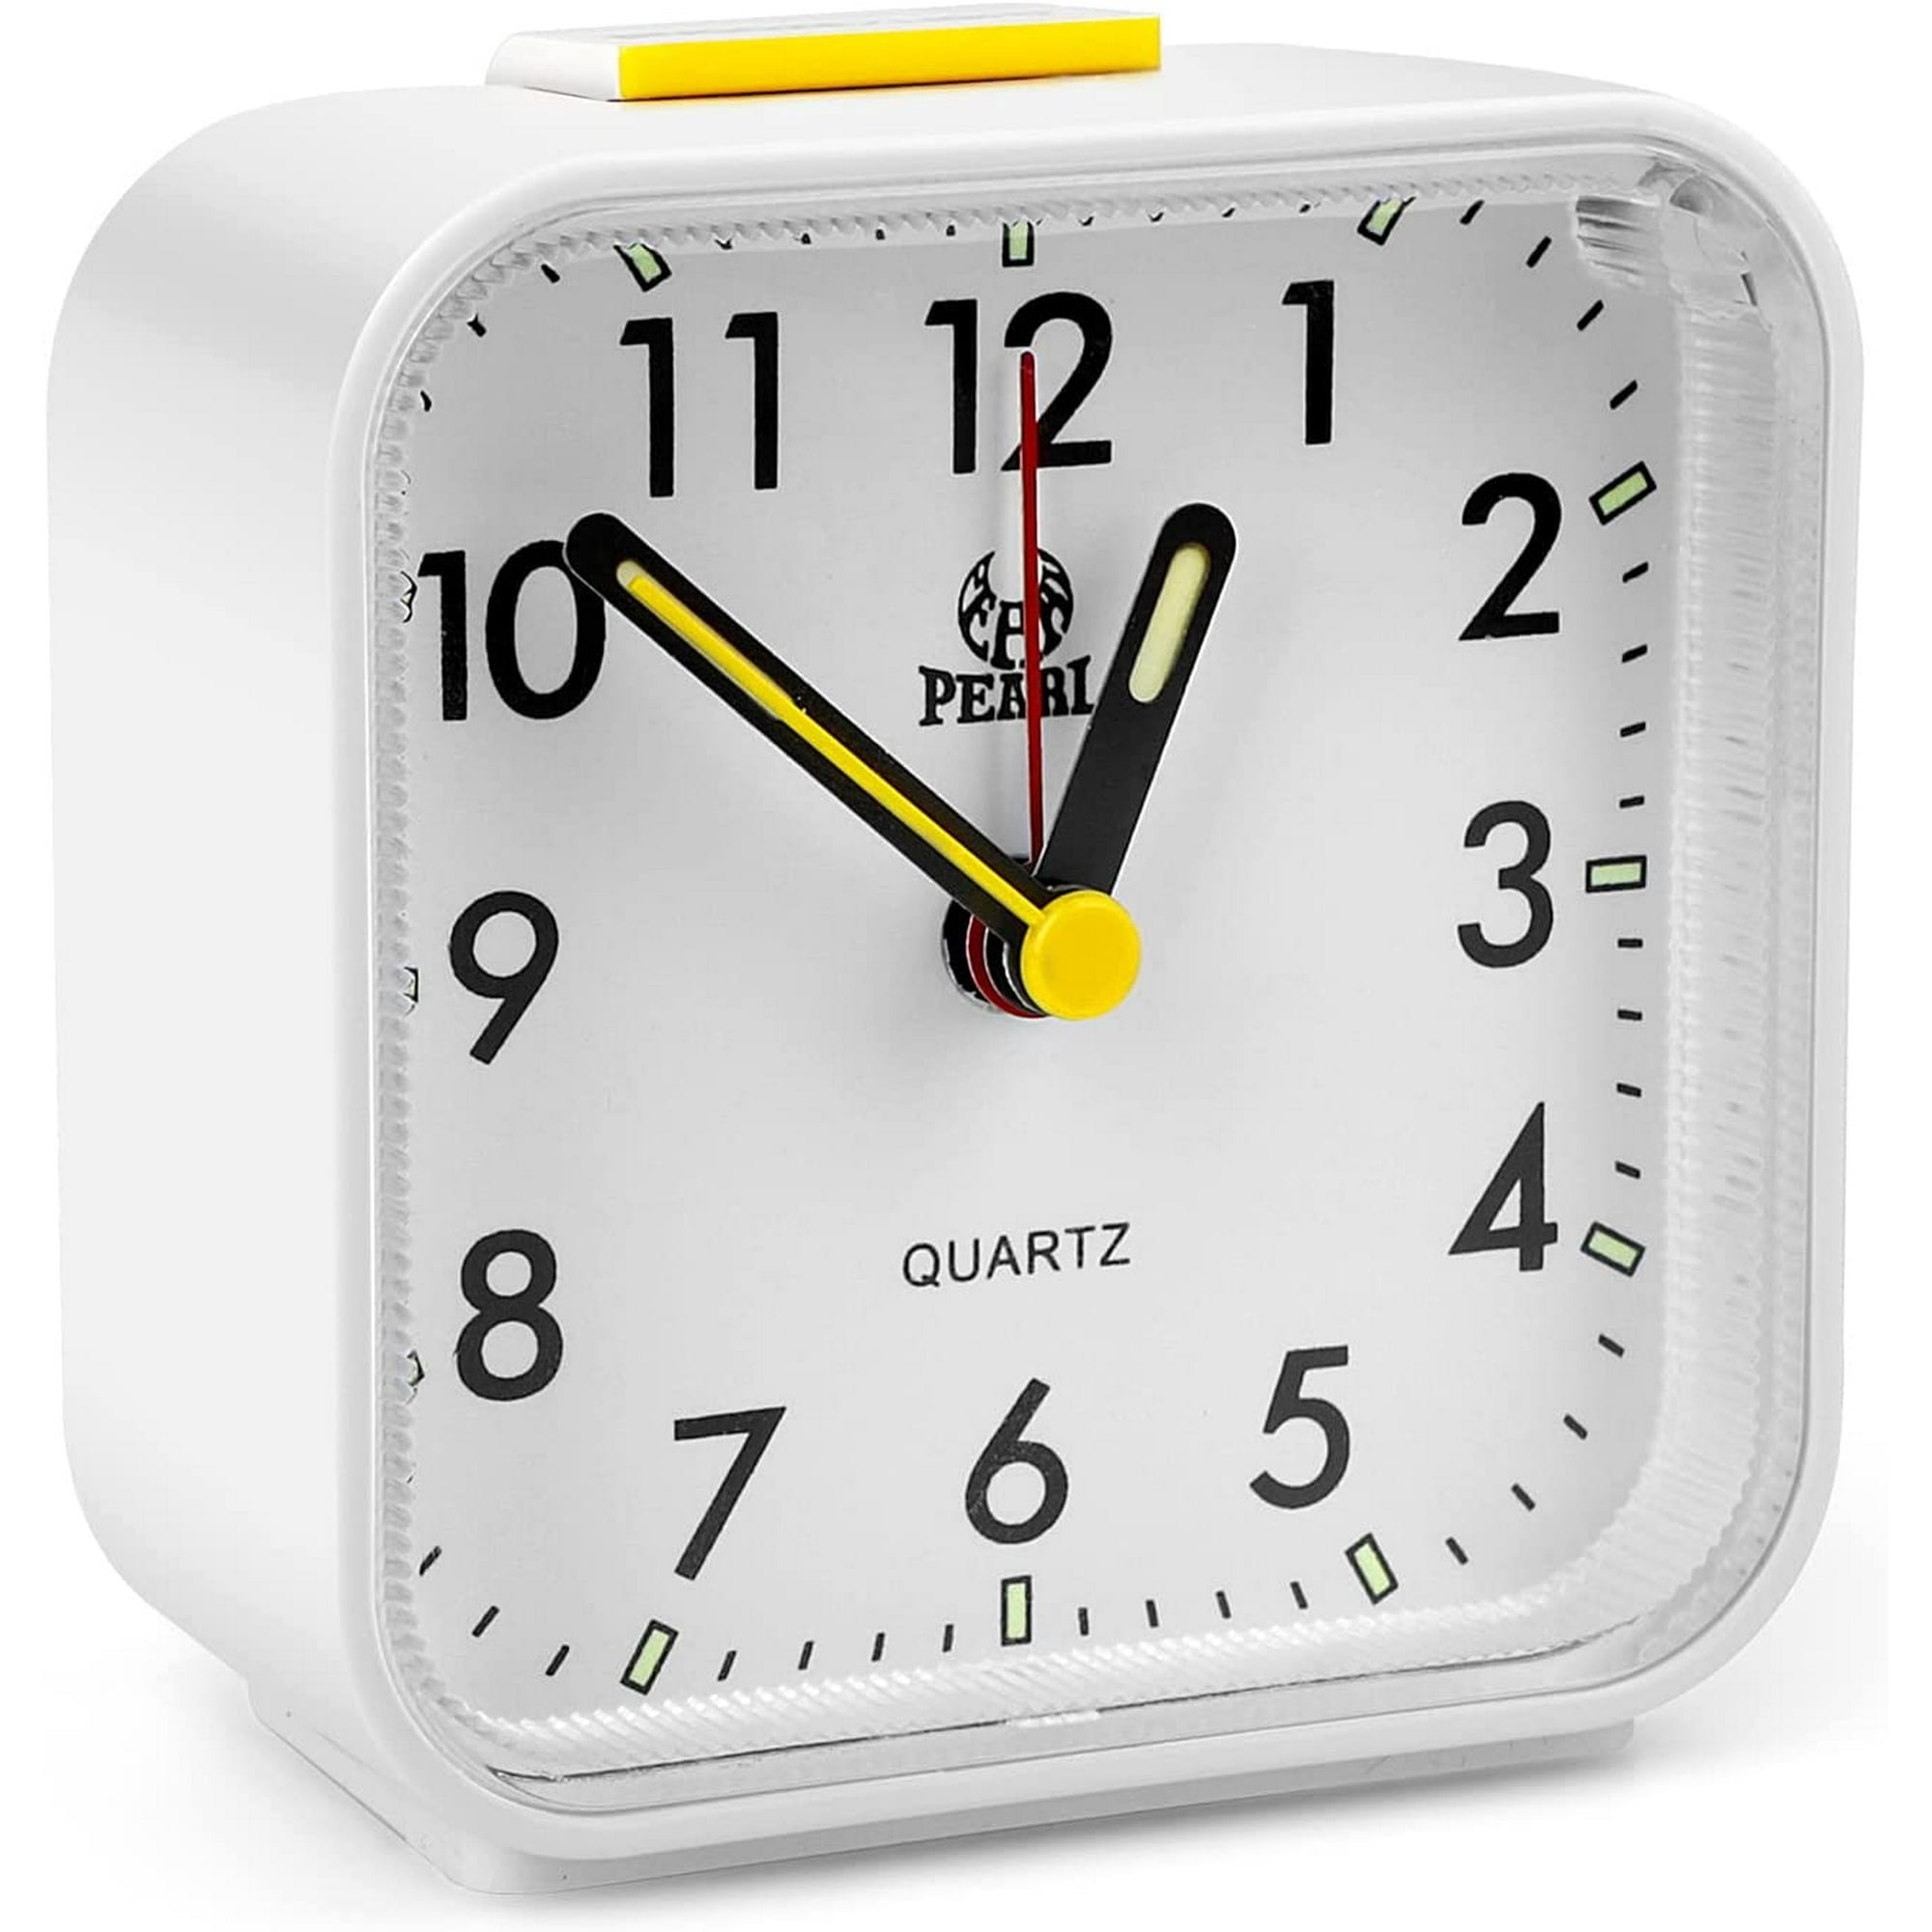 Reloj despertador analógico vintage (blanco), reloj despertador silencioso  de metal, reloj despertador ruidoso junto a la cama, funciona con pilas,  para dormitorio, cocina, oficina JM